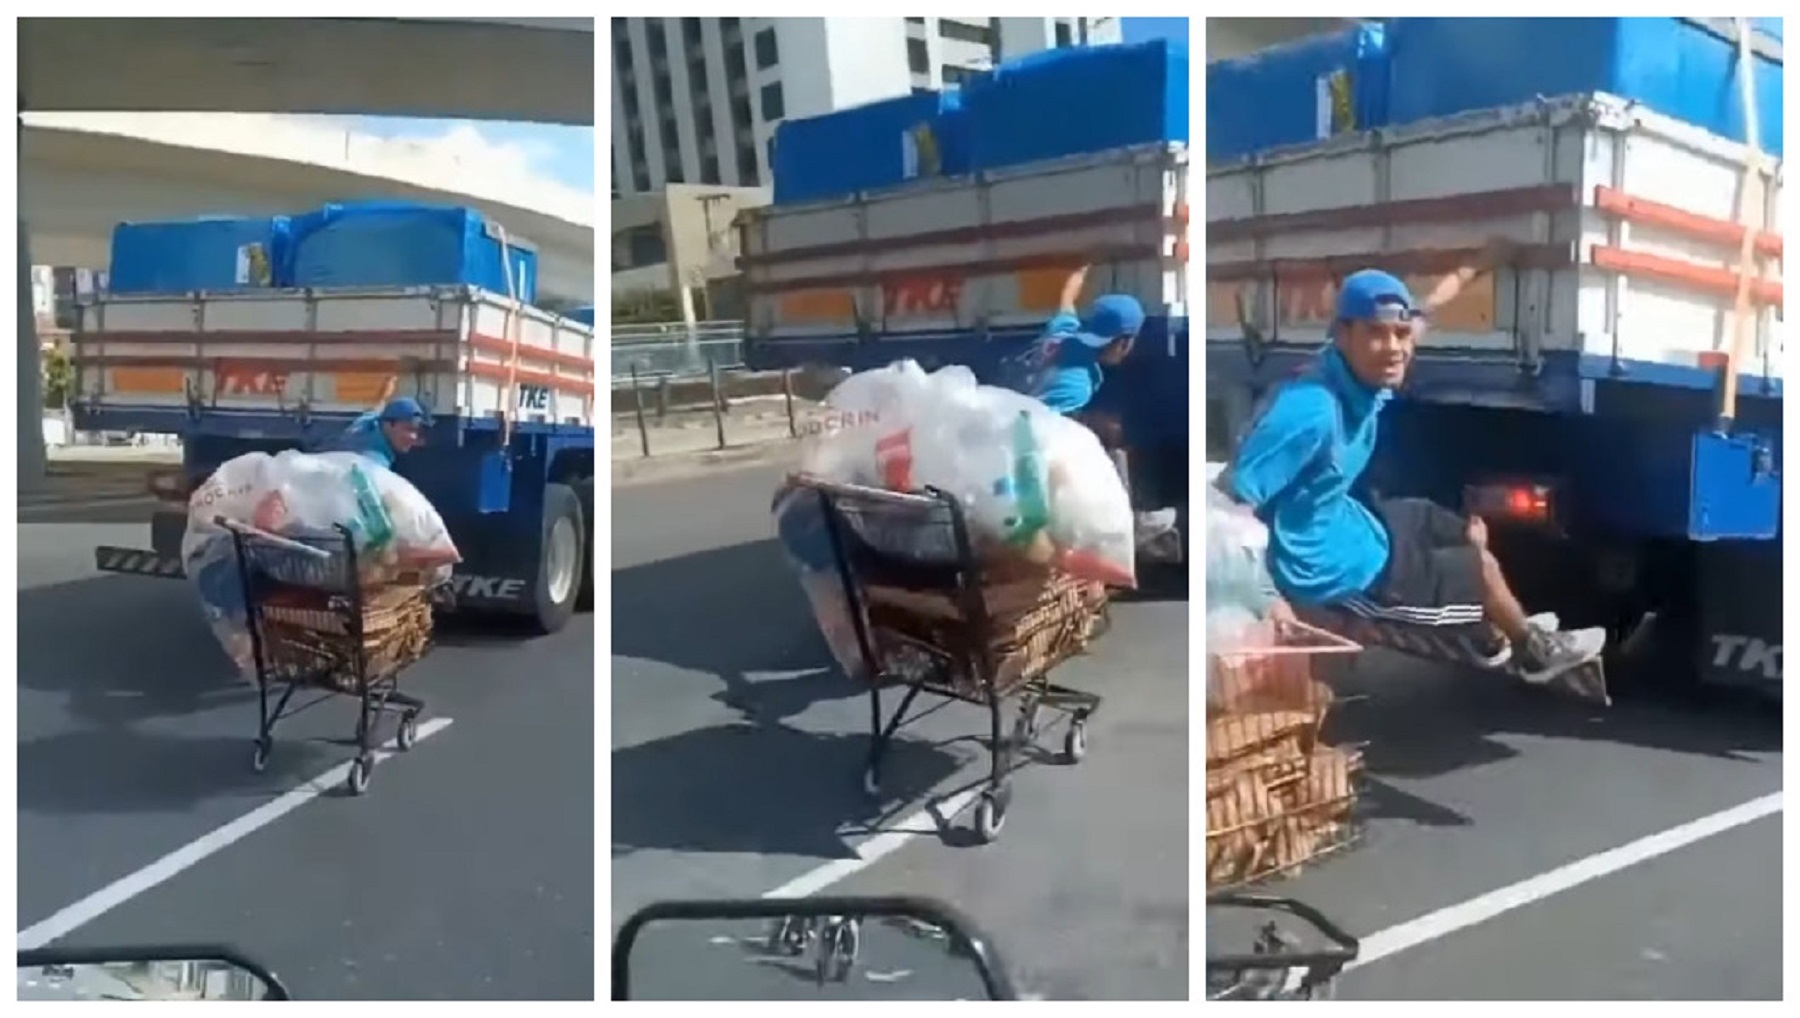 Homem pega rabeira em caminhão com carrinho de supermercado